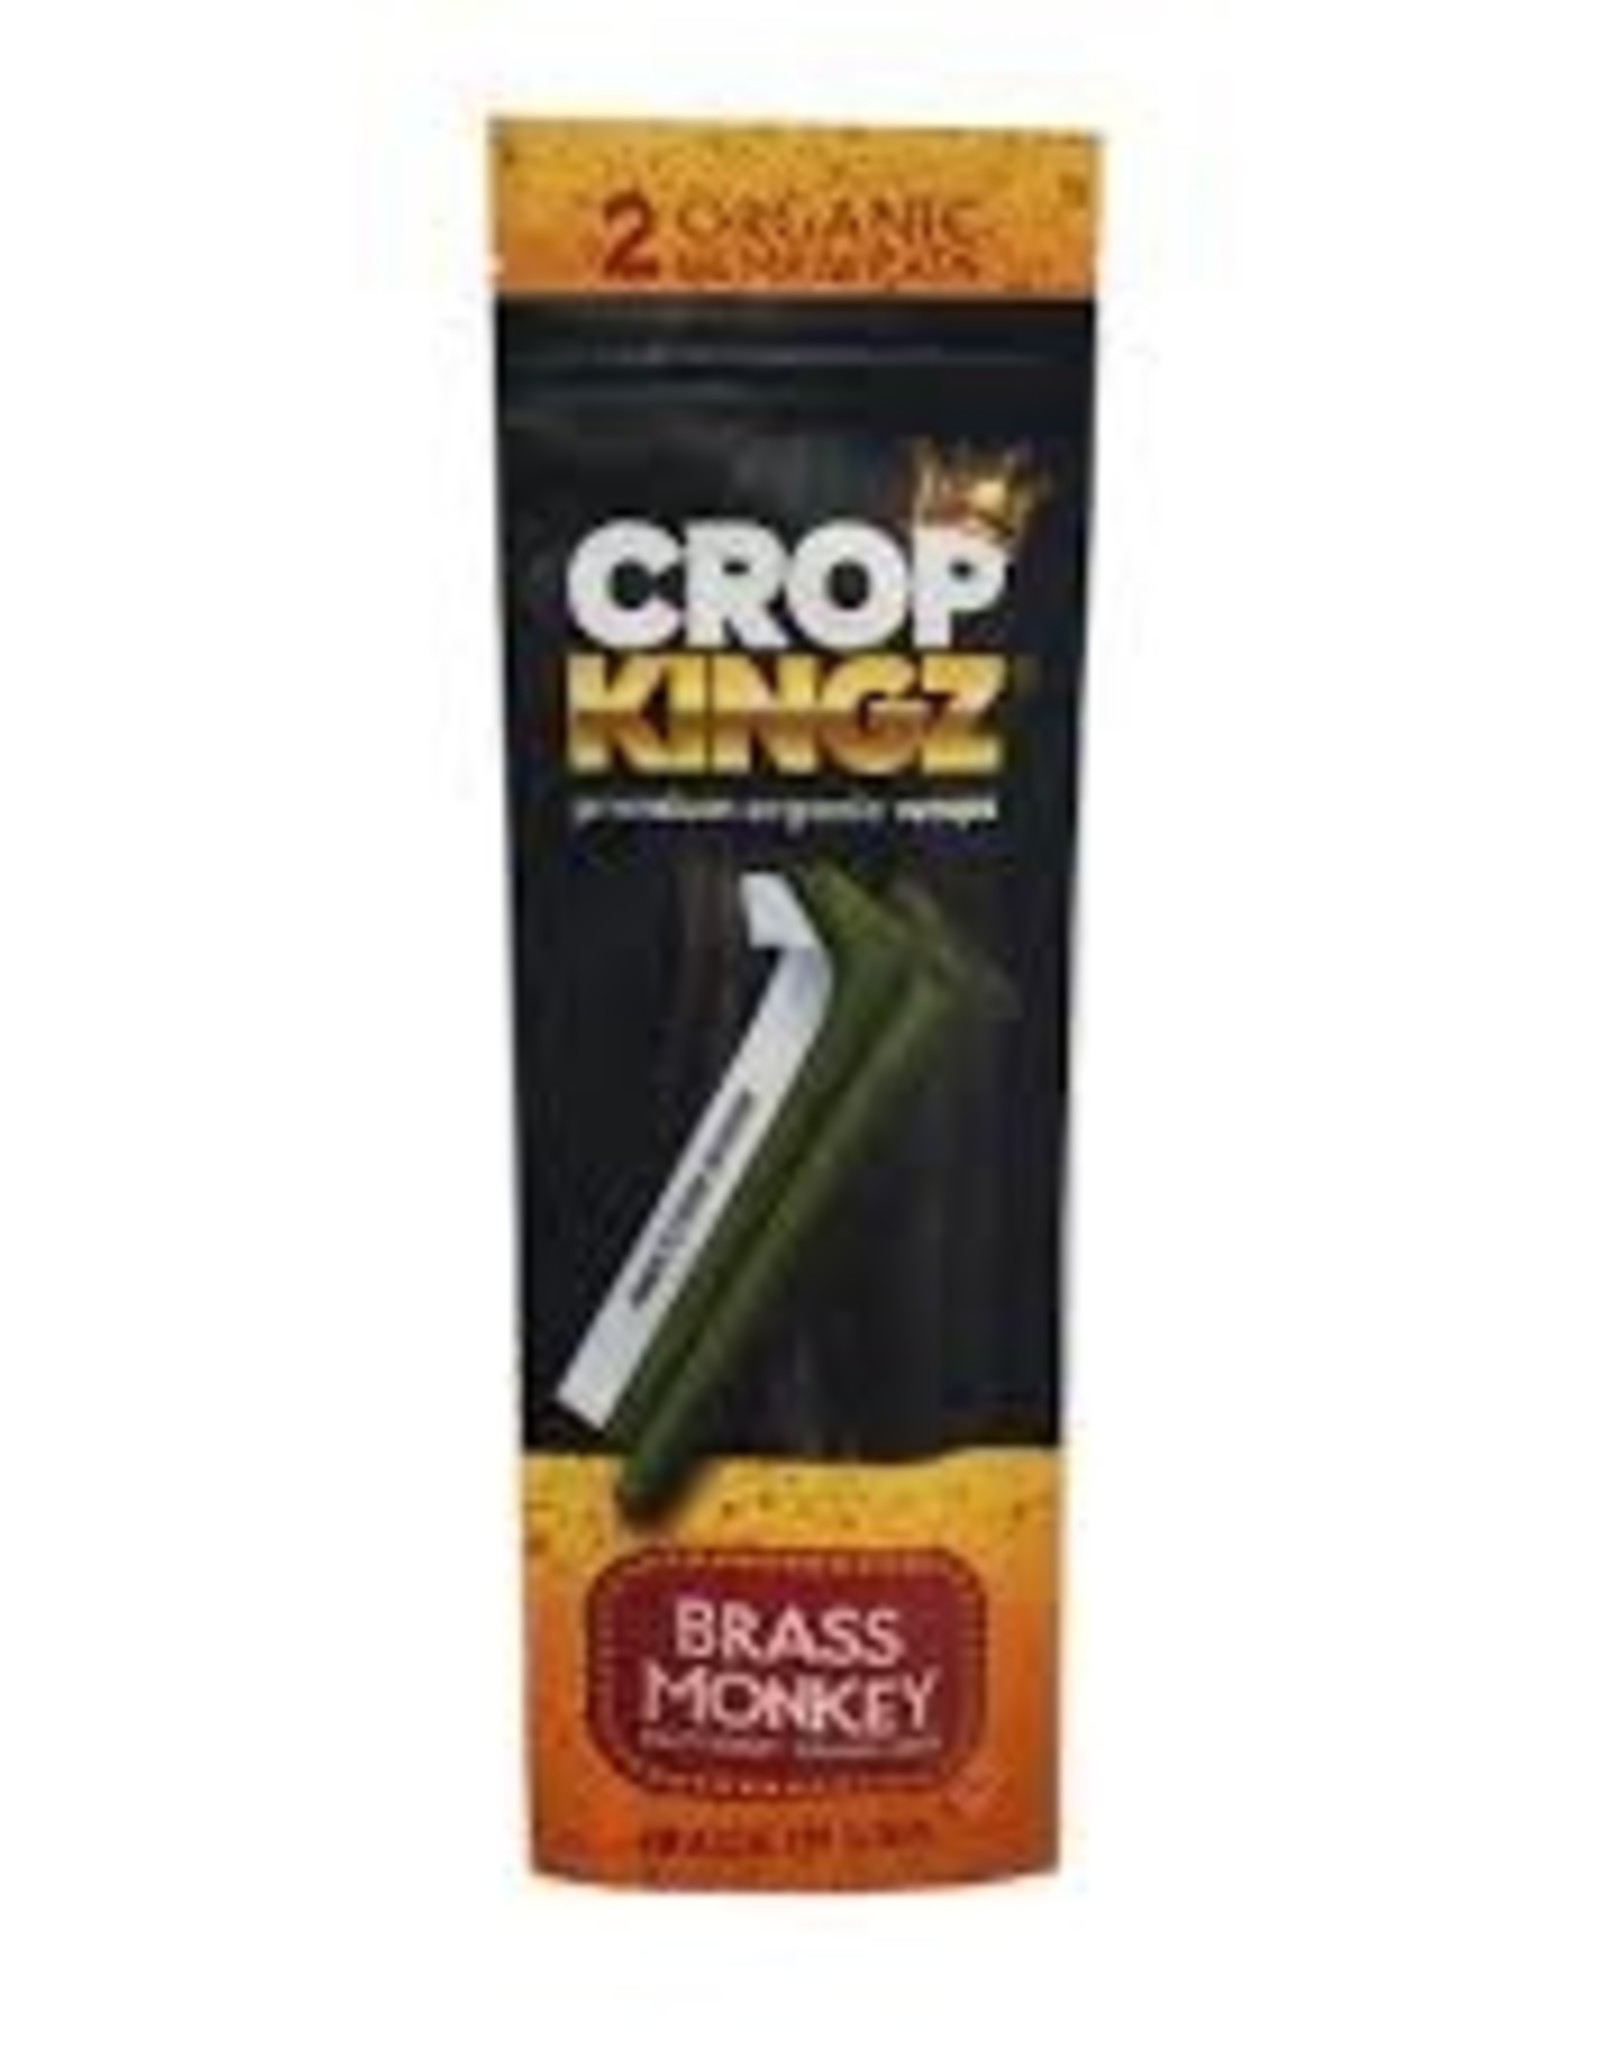 Crop Kingz Crop Kingz Brass Monkey Hemp Wraps